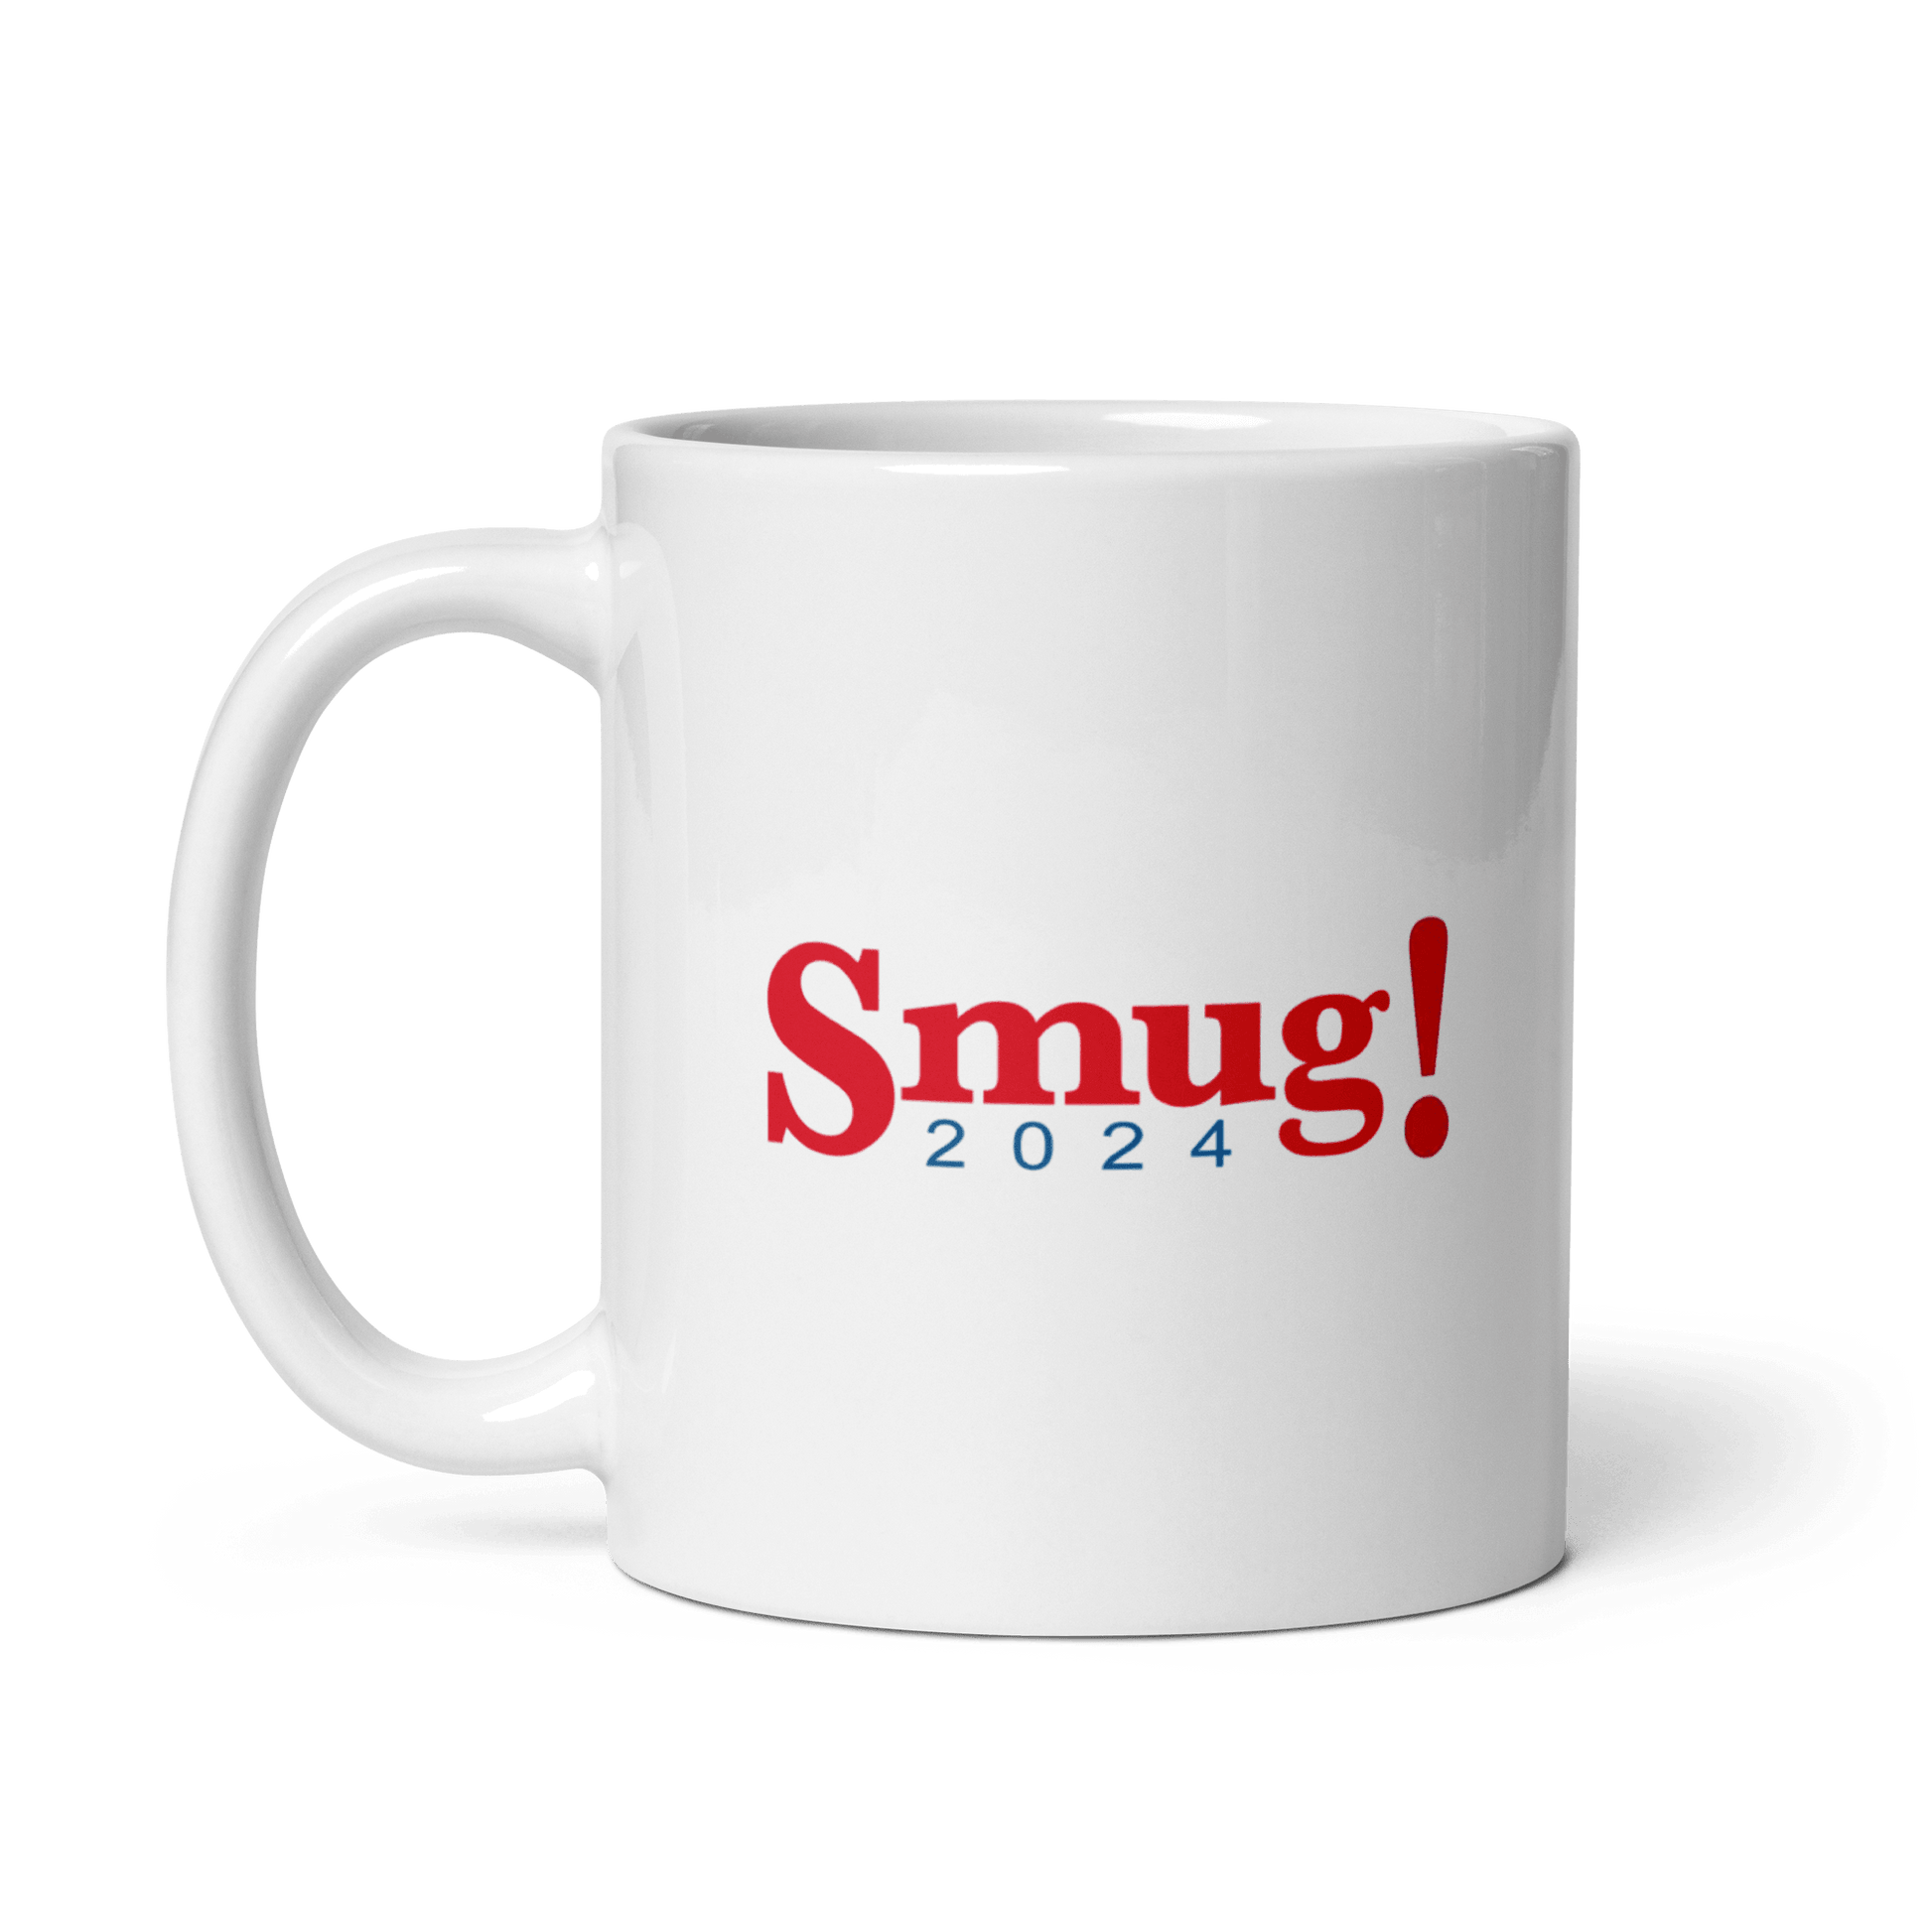 Smug! 2024 Mug - Ruthless